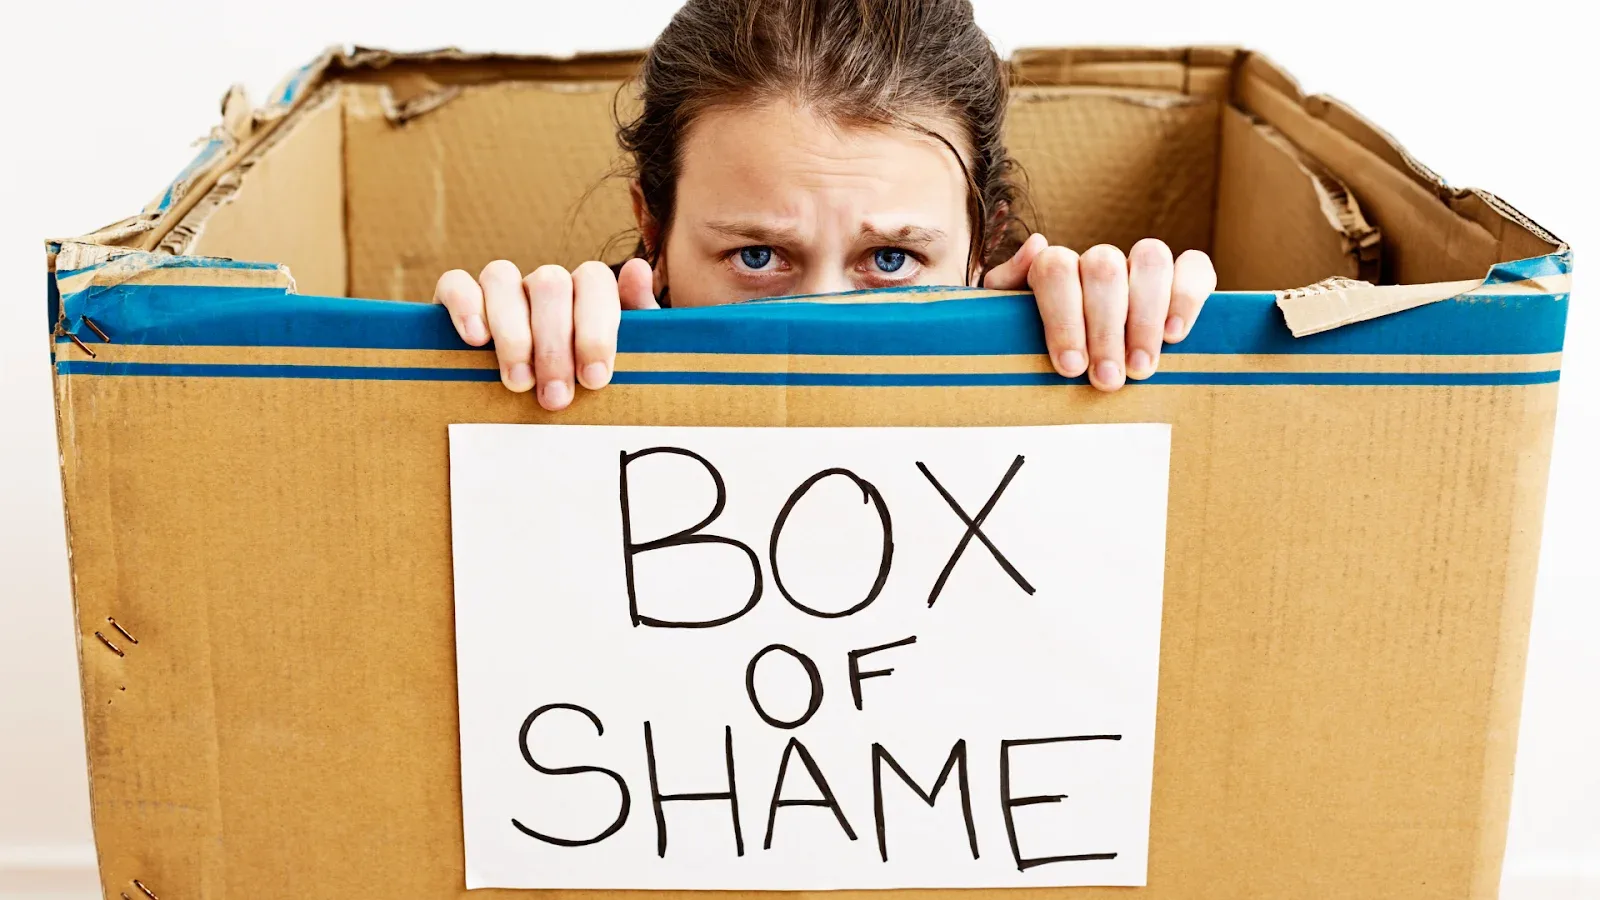 guy in box of shame. guilt vs shame